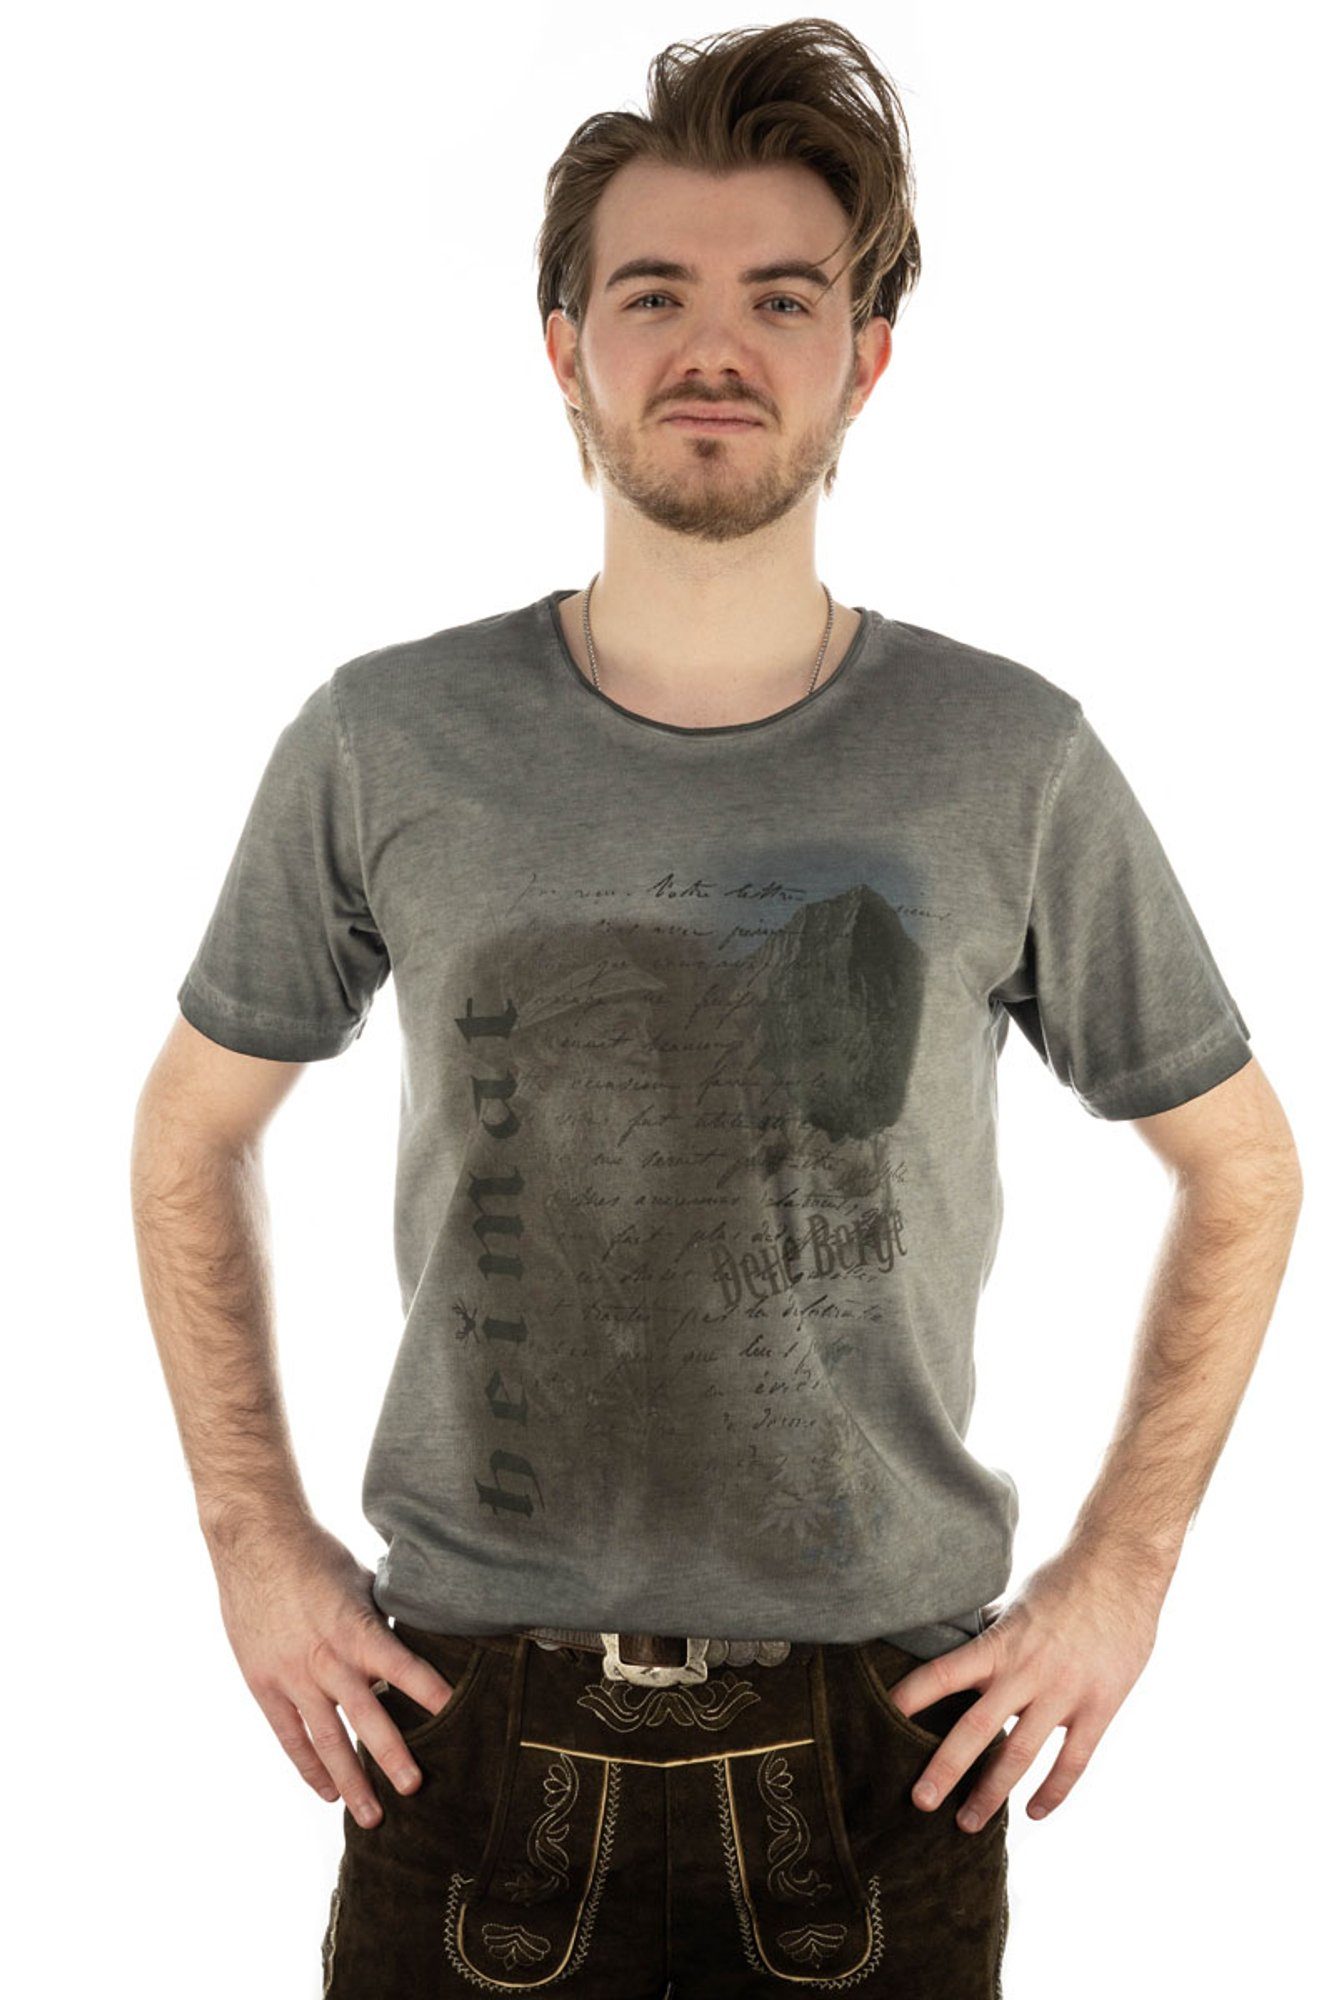 OS-Trachten Trachtenshirt Praiol Kurzarm T-Shirt mit Motivdruck anthrazit